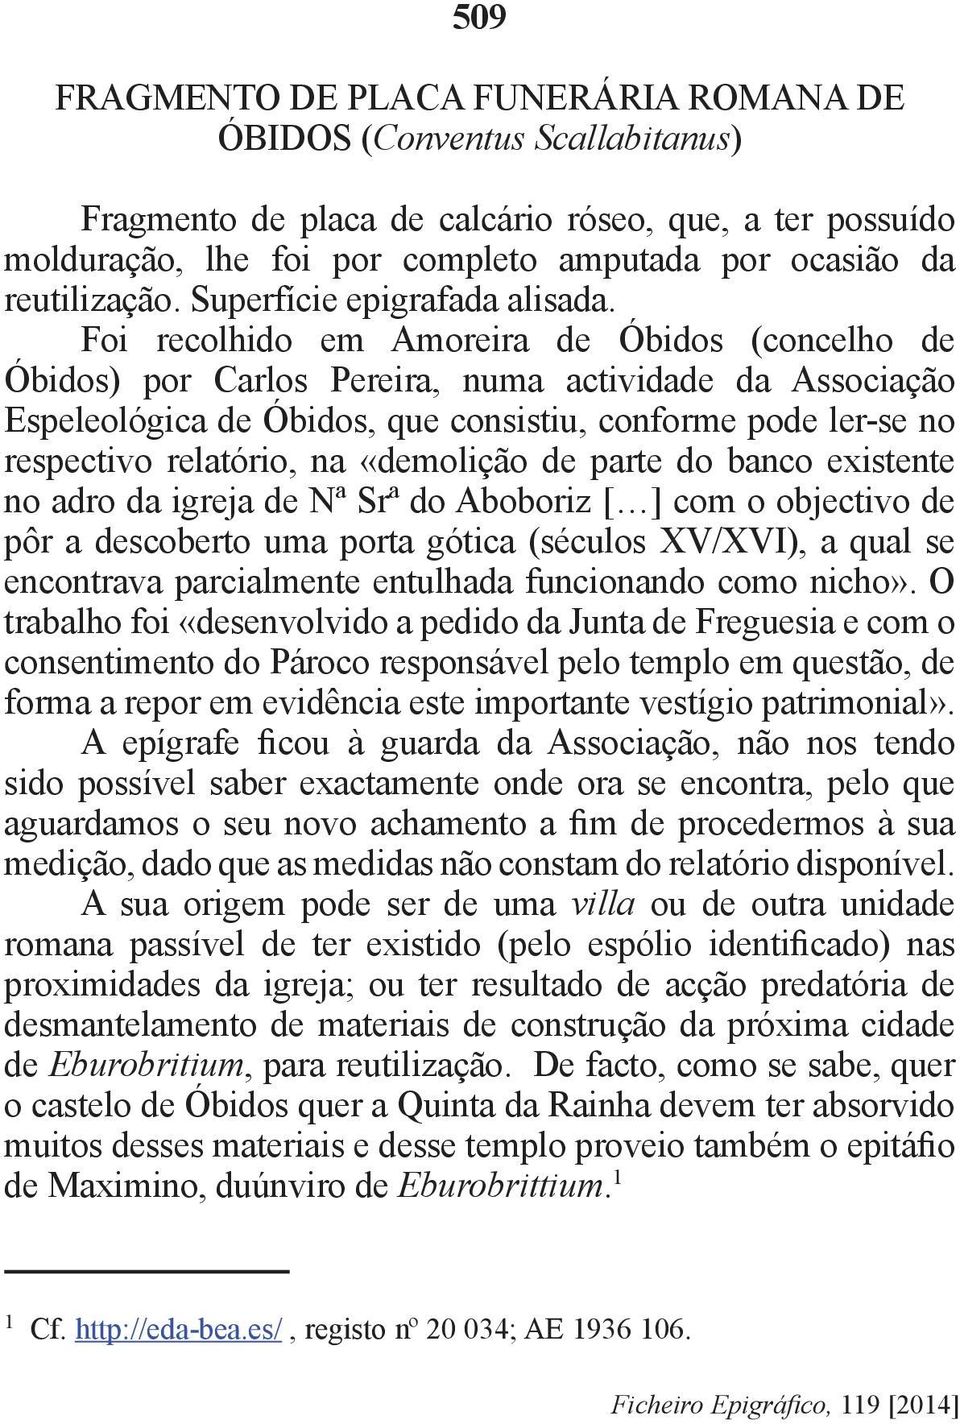 Foi recolhido em Amoreira de Óbidos (concelho de Óbidos) por Carlos Pereira, numa actividade da Associação Espeleológica de Óbidos, que consistiu, conforme pode ler-se no respectivo relatório, na